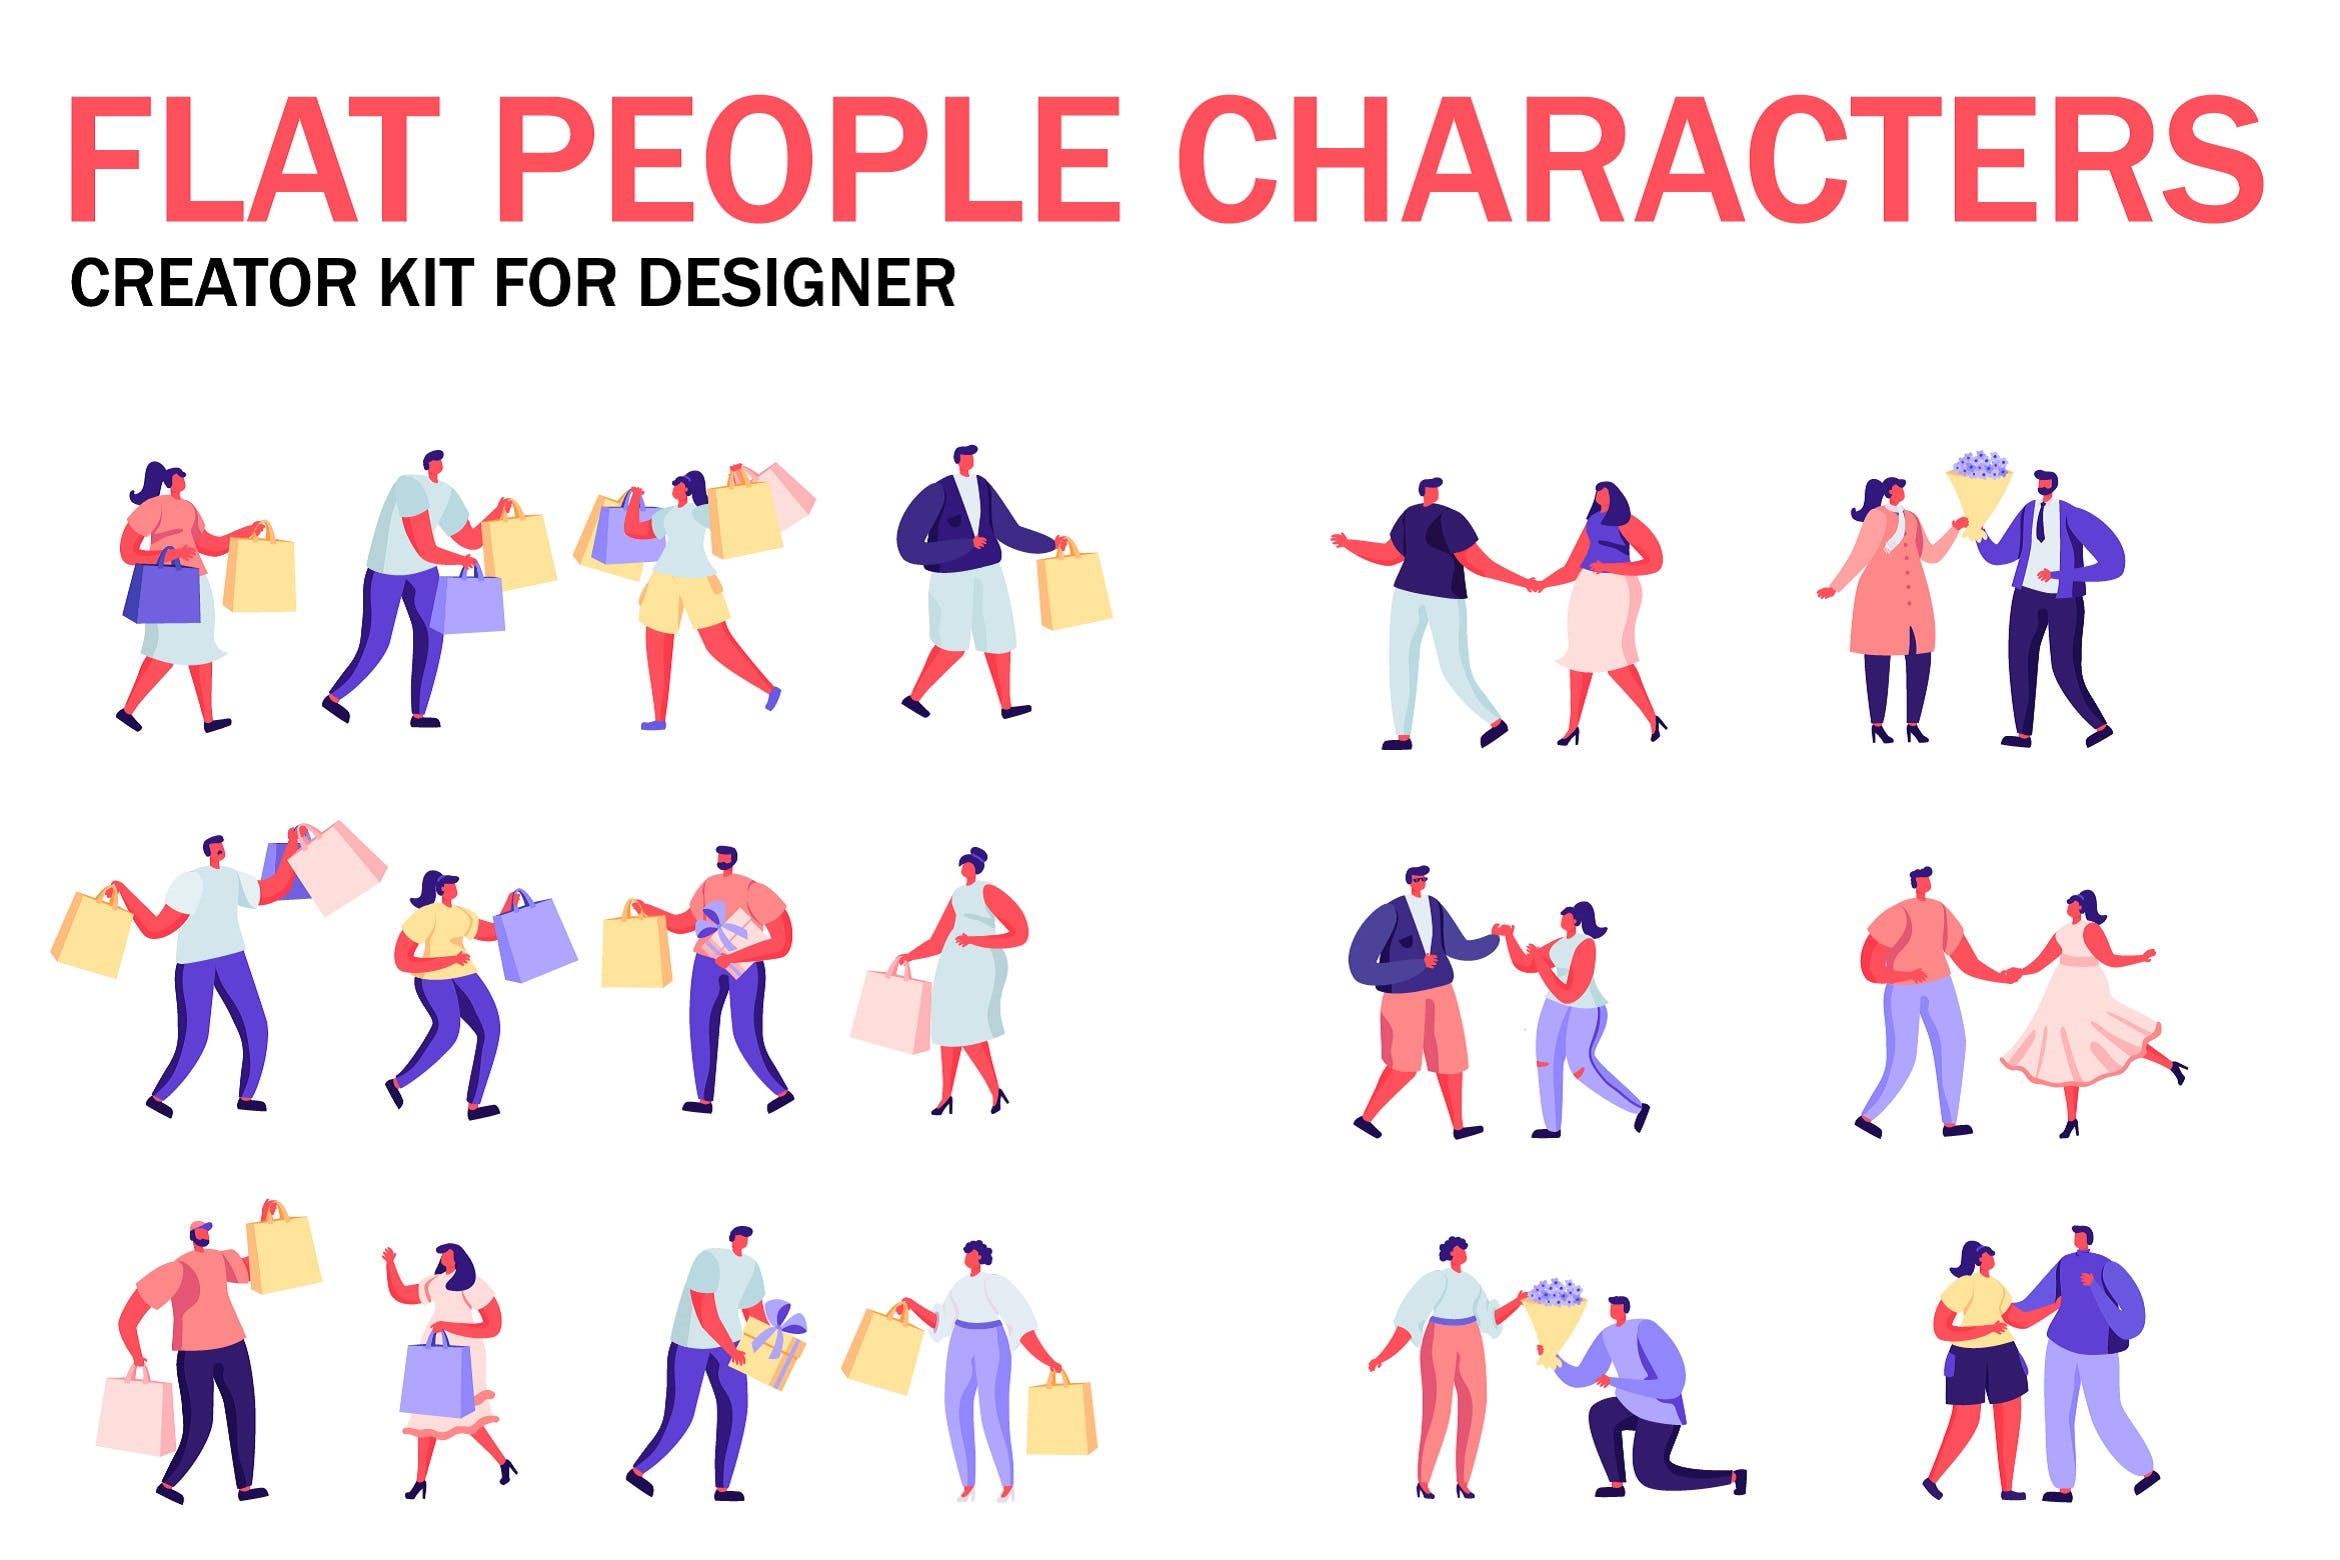 扁平化设计风格虚拟人物角色图形设计工具包v7 Flat People Character Creator Kit插图